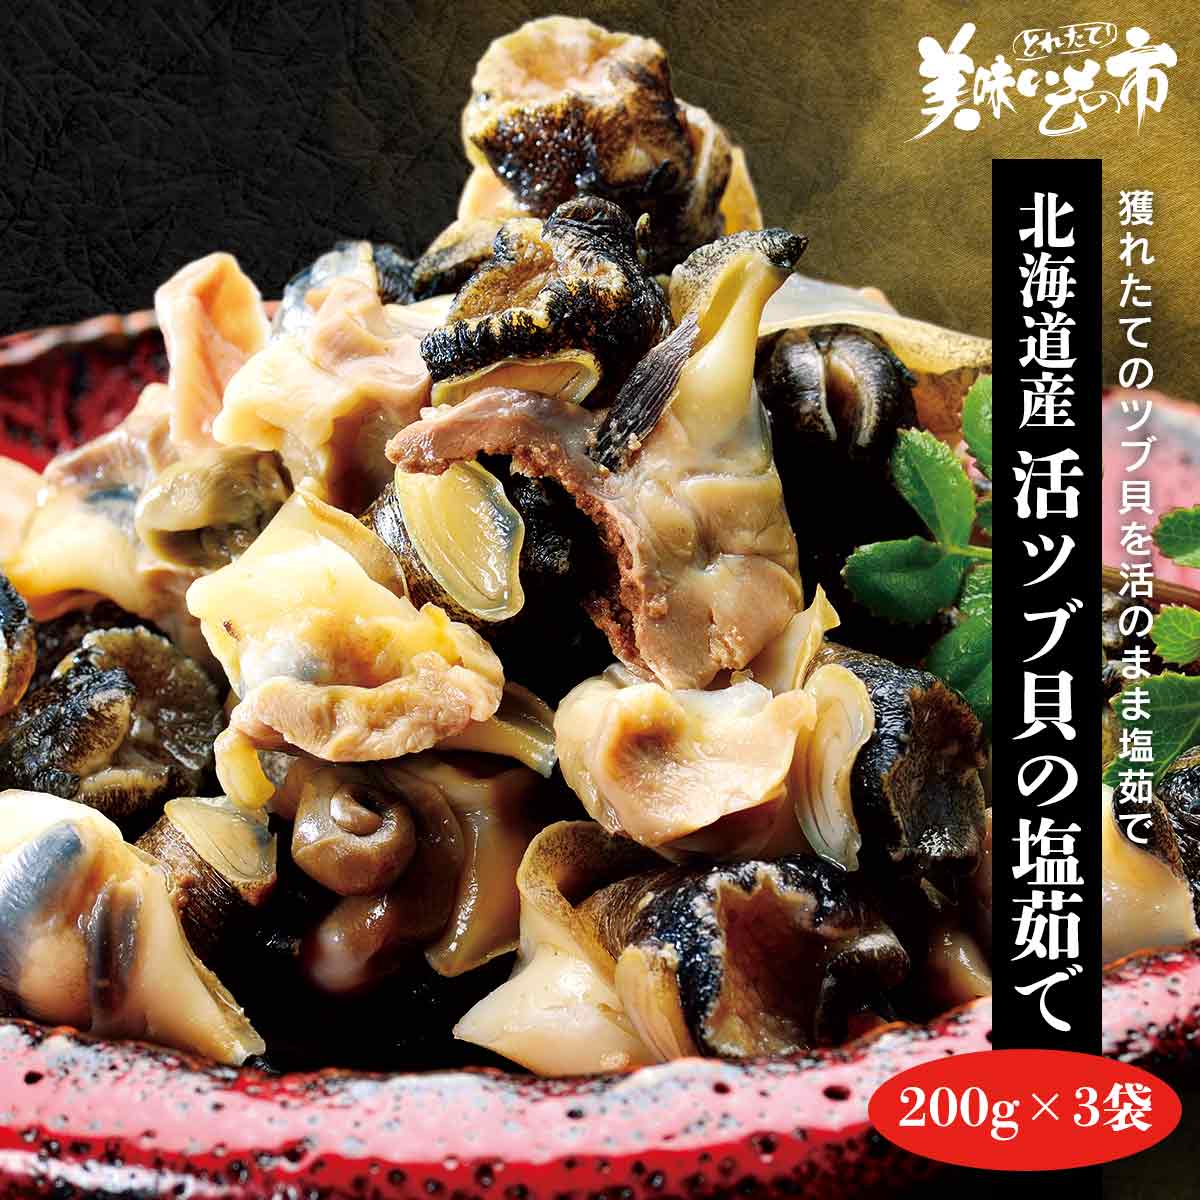 ■北海道産活ツブ貝の塩茹で200g×3袋「ねこぶだし」でおなじみ「とれたて！美味いもの市」から登場